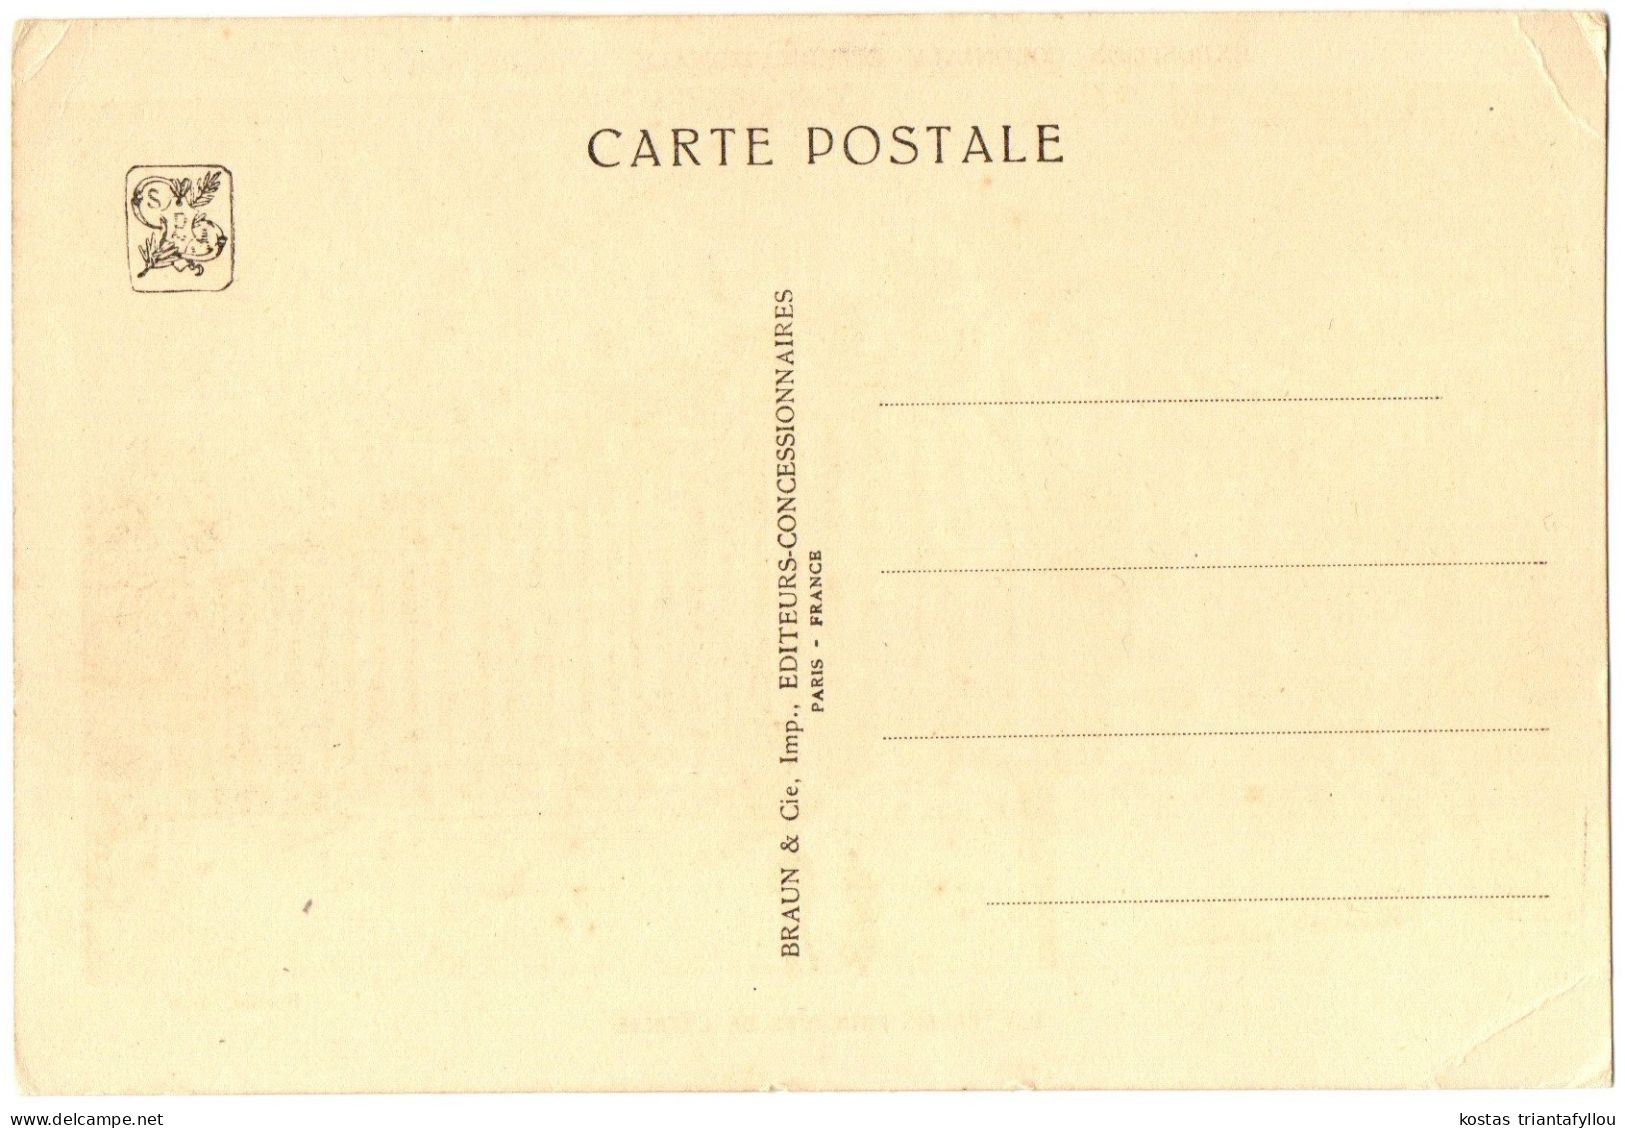 1.8.2 FRANCE, PARIS, EXPOSITION COLONIALE INTERNATIONALE, PAVILLON DE LA PALESTINE, 1931, POSTCARD - Exhibitions